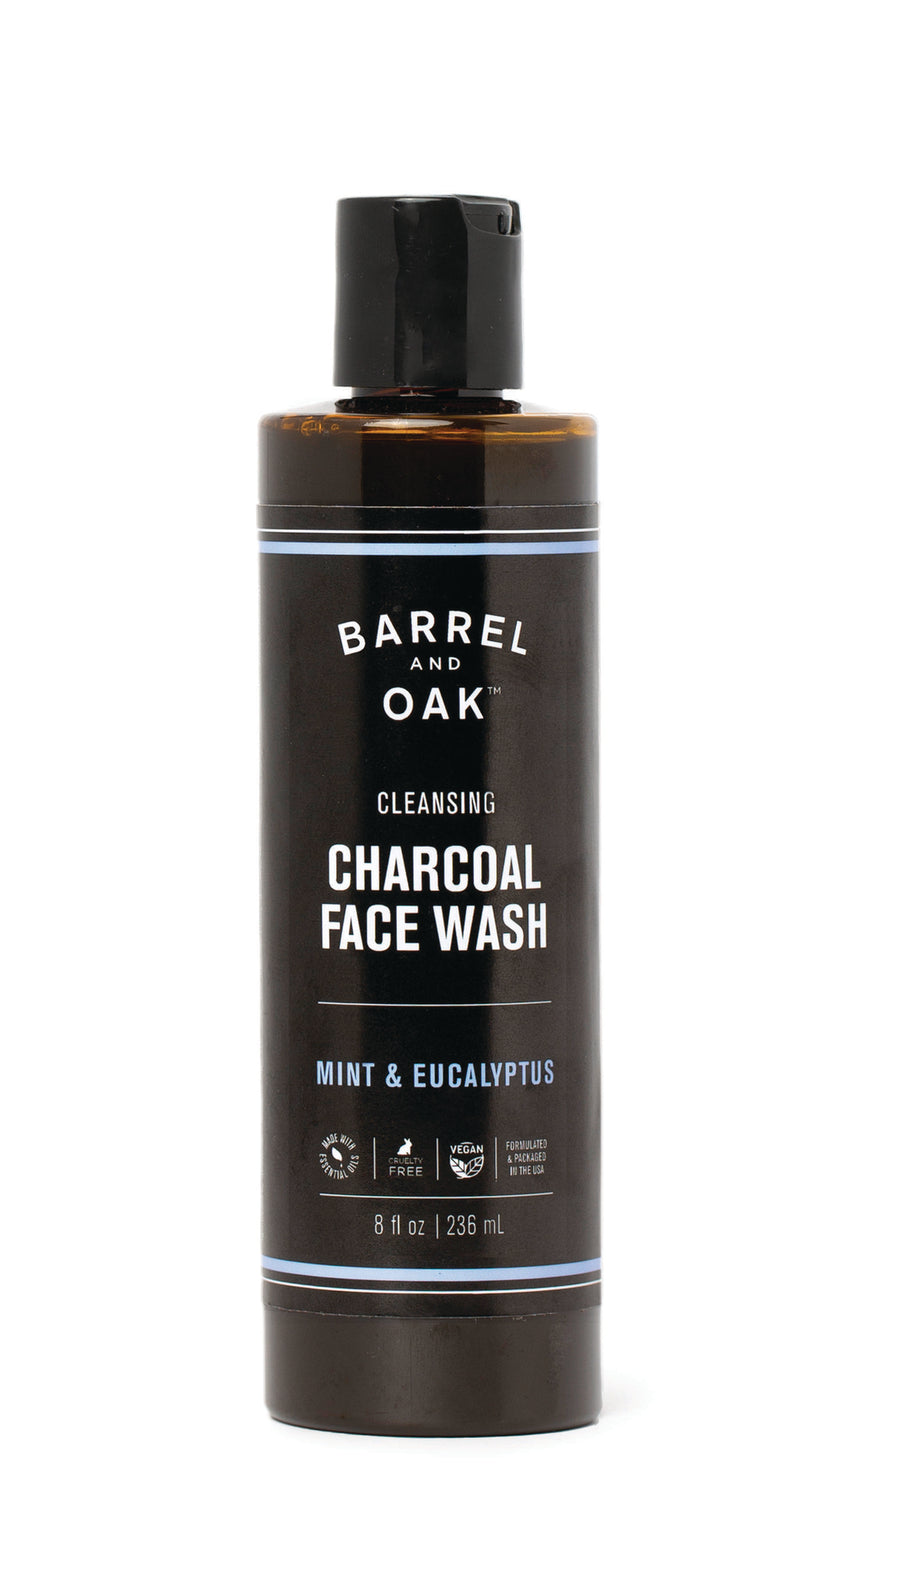 Cleansing Charcoal Face Wash - Mint & Eucalyptus 8 oz. black bottle